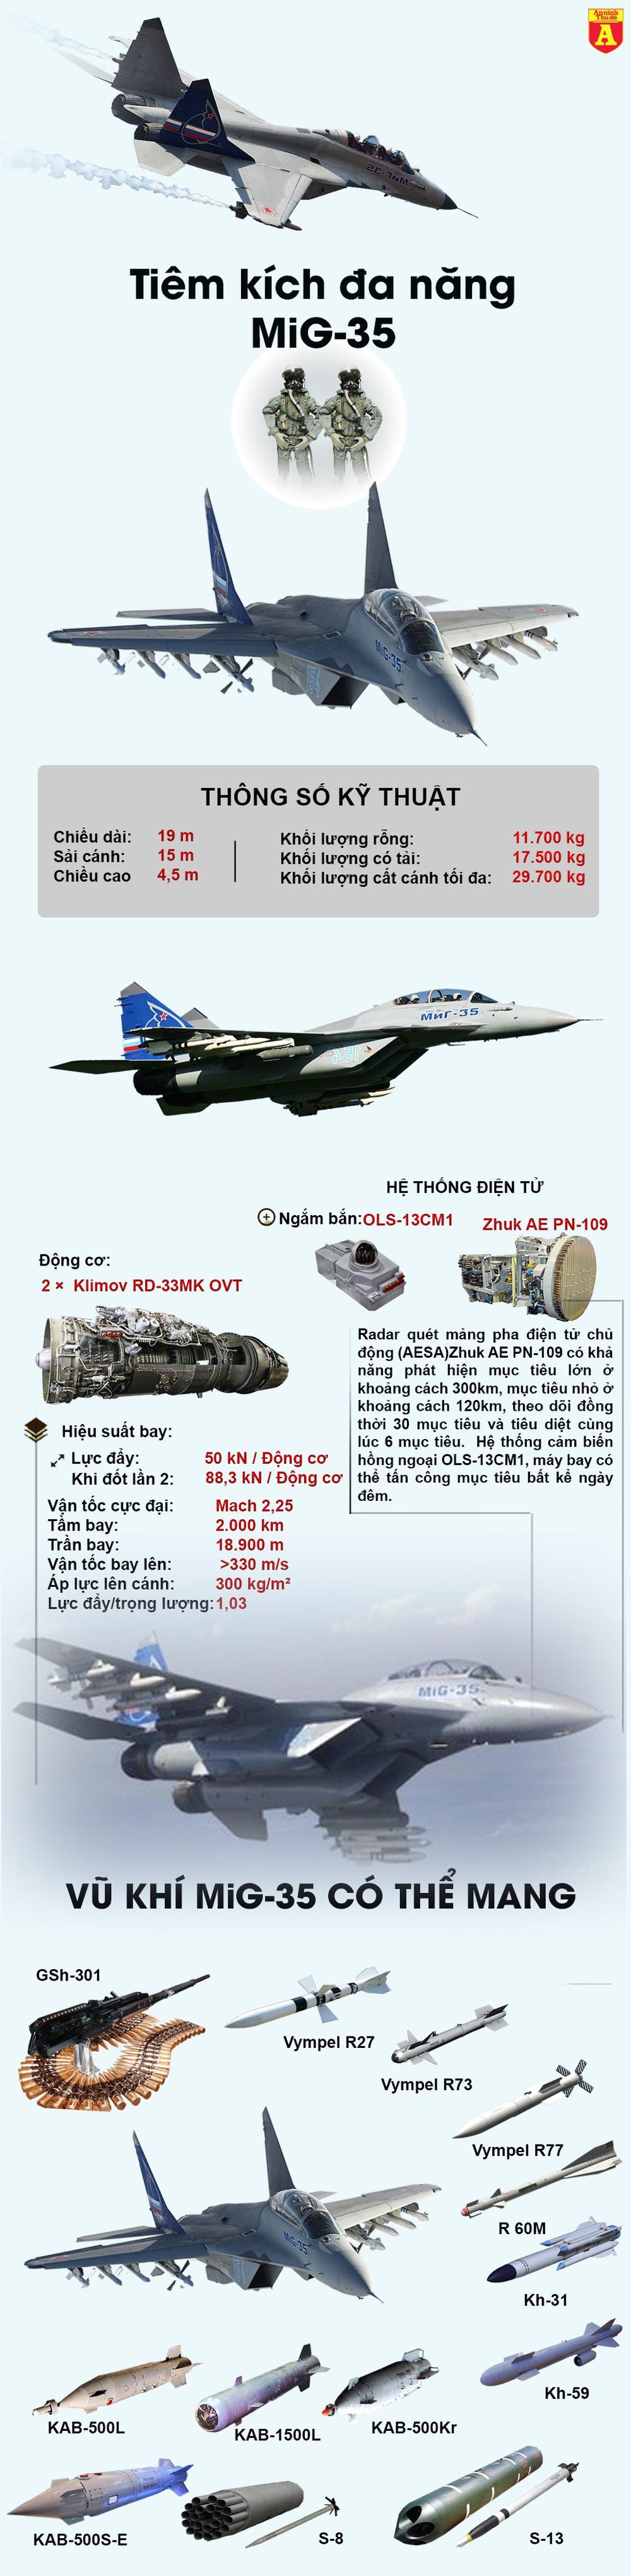 [Infographics] Quân đội Ấn Độ - Cứu tinh của MiG-35  - Ảnh 1